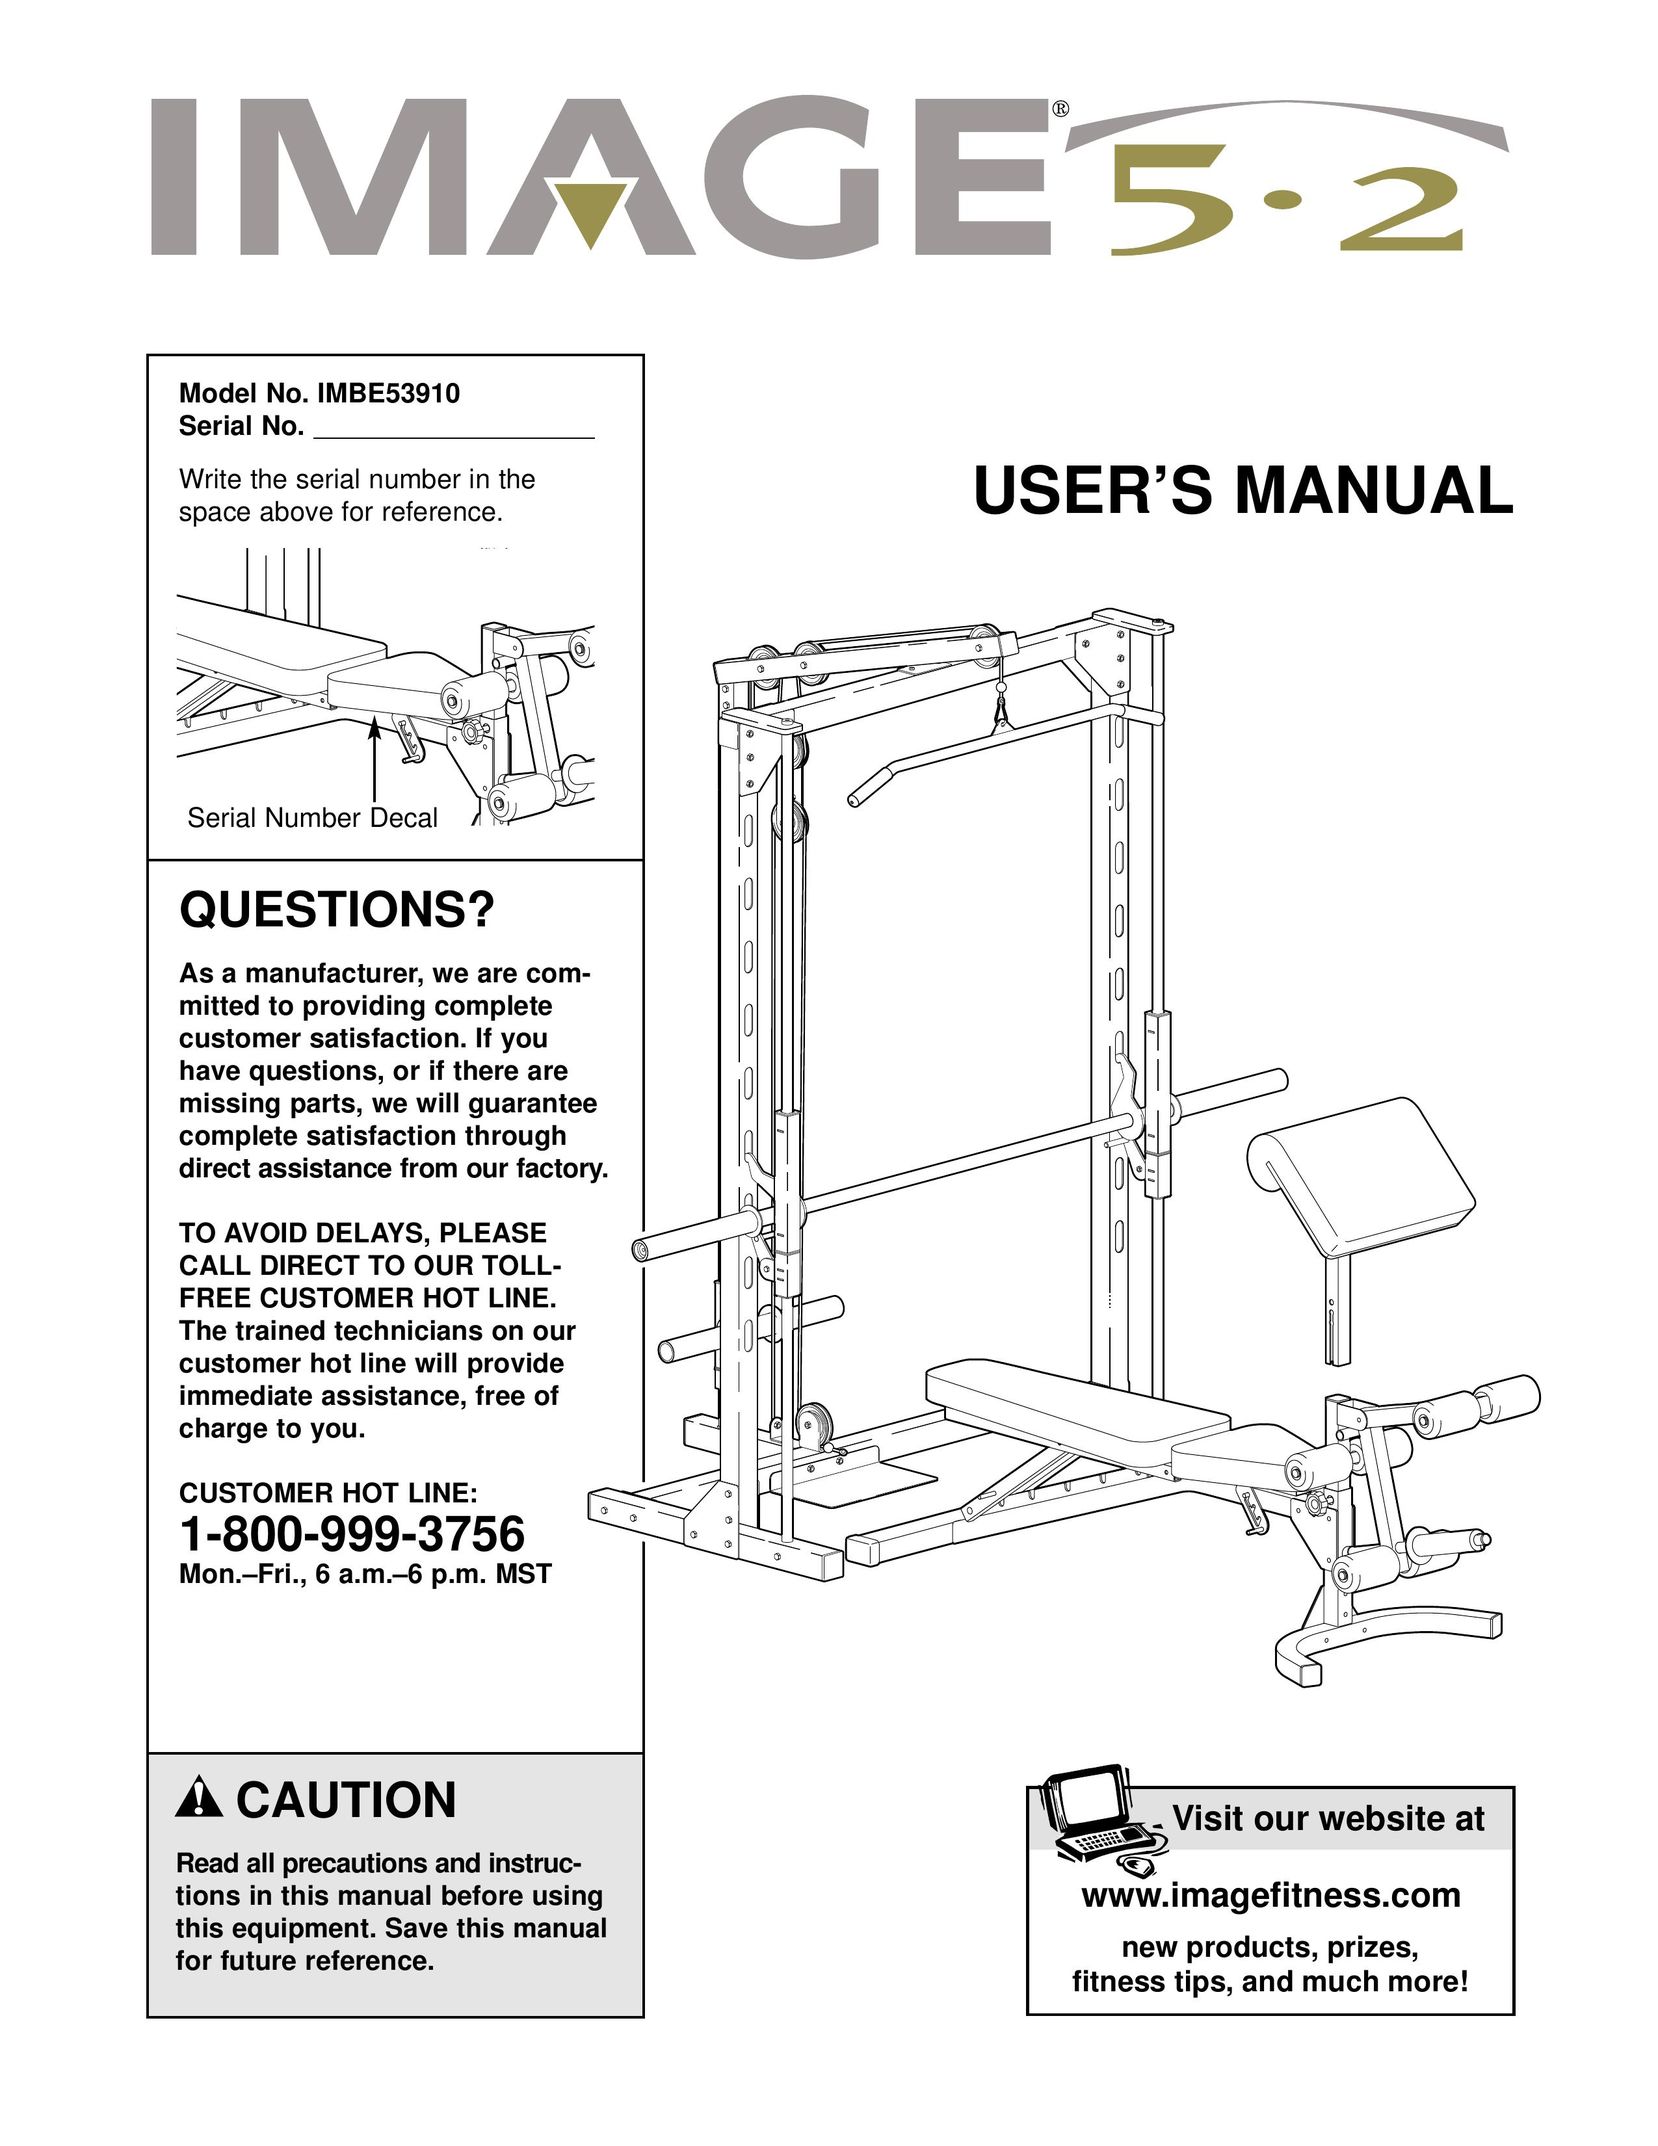 Image IMBE53910 Home Gym User Manual